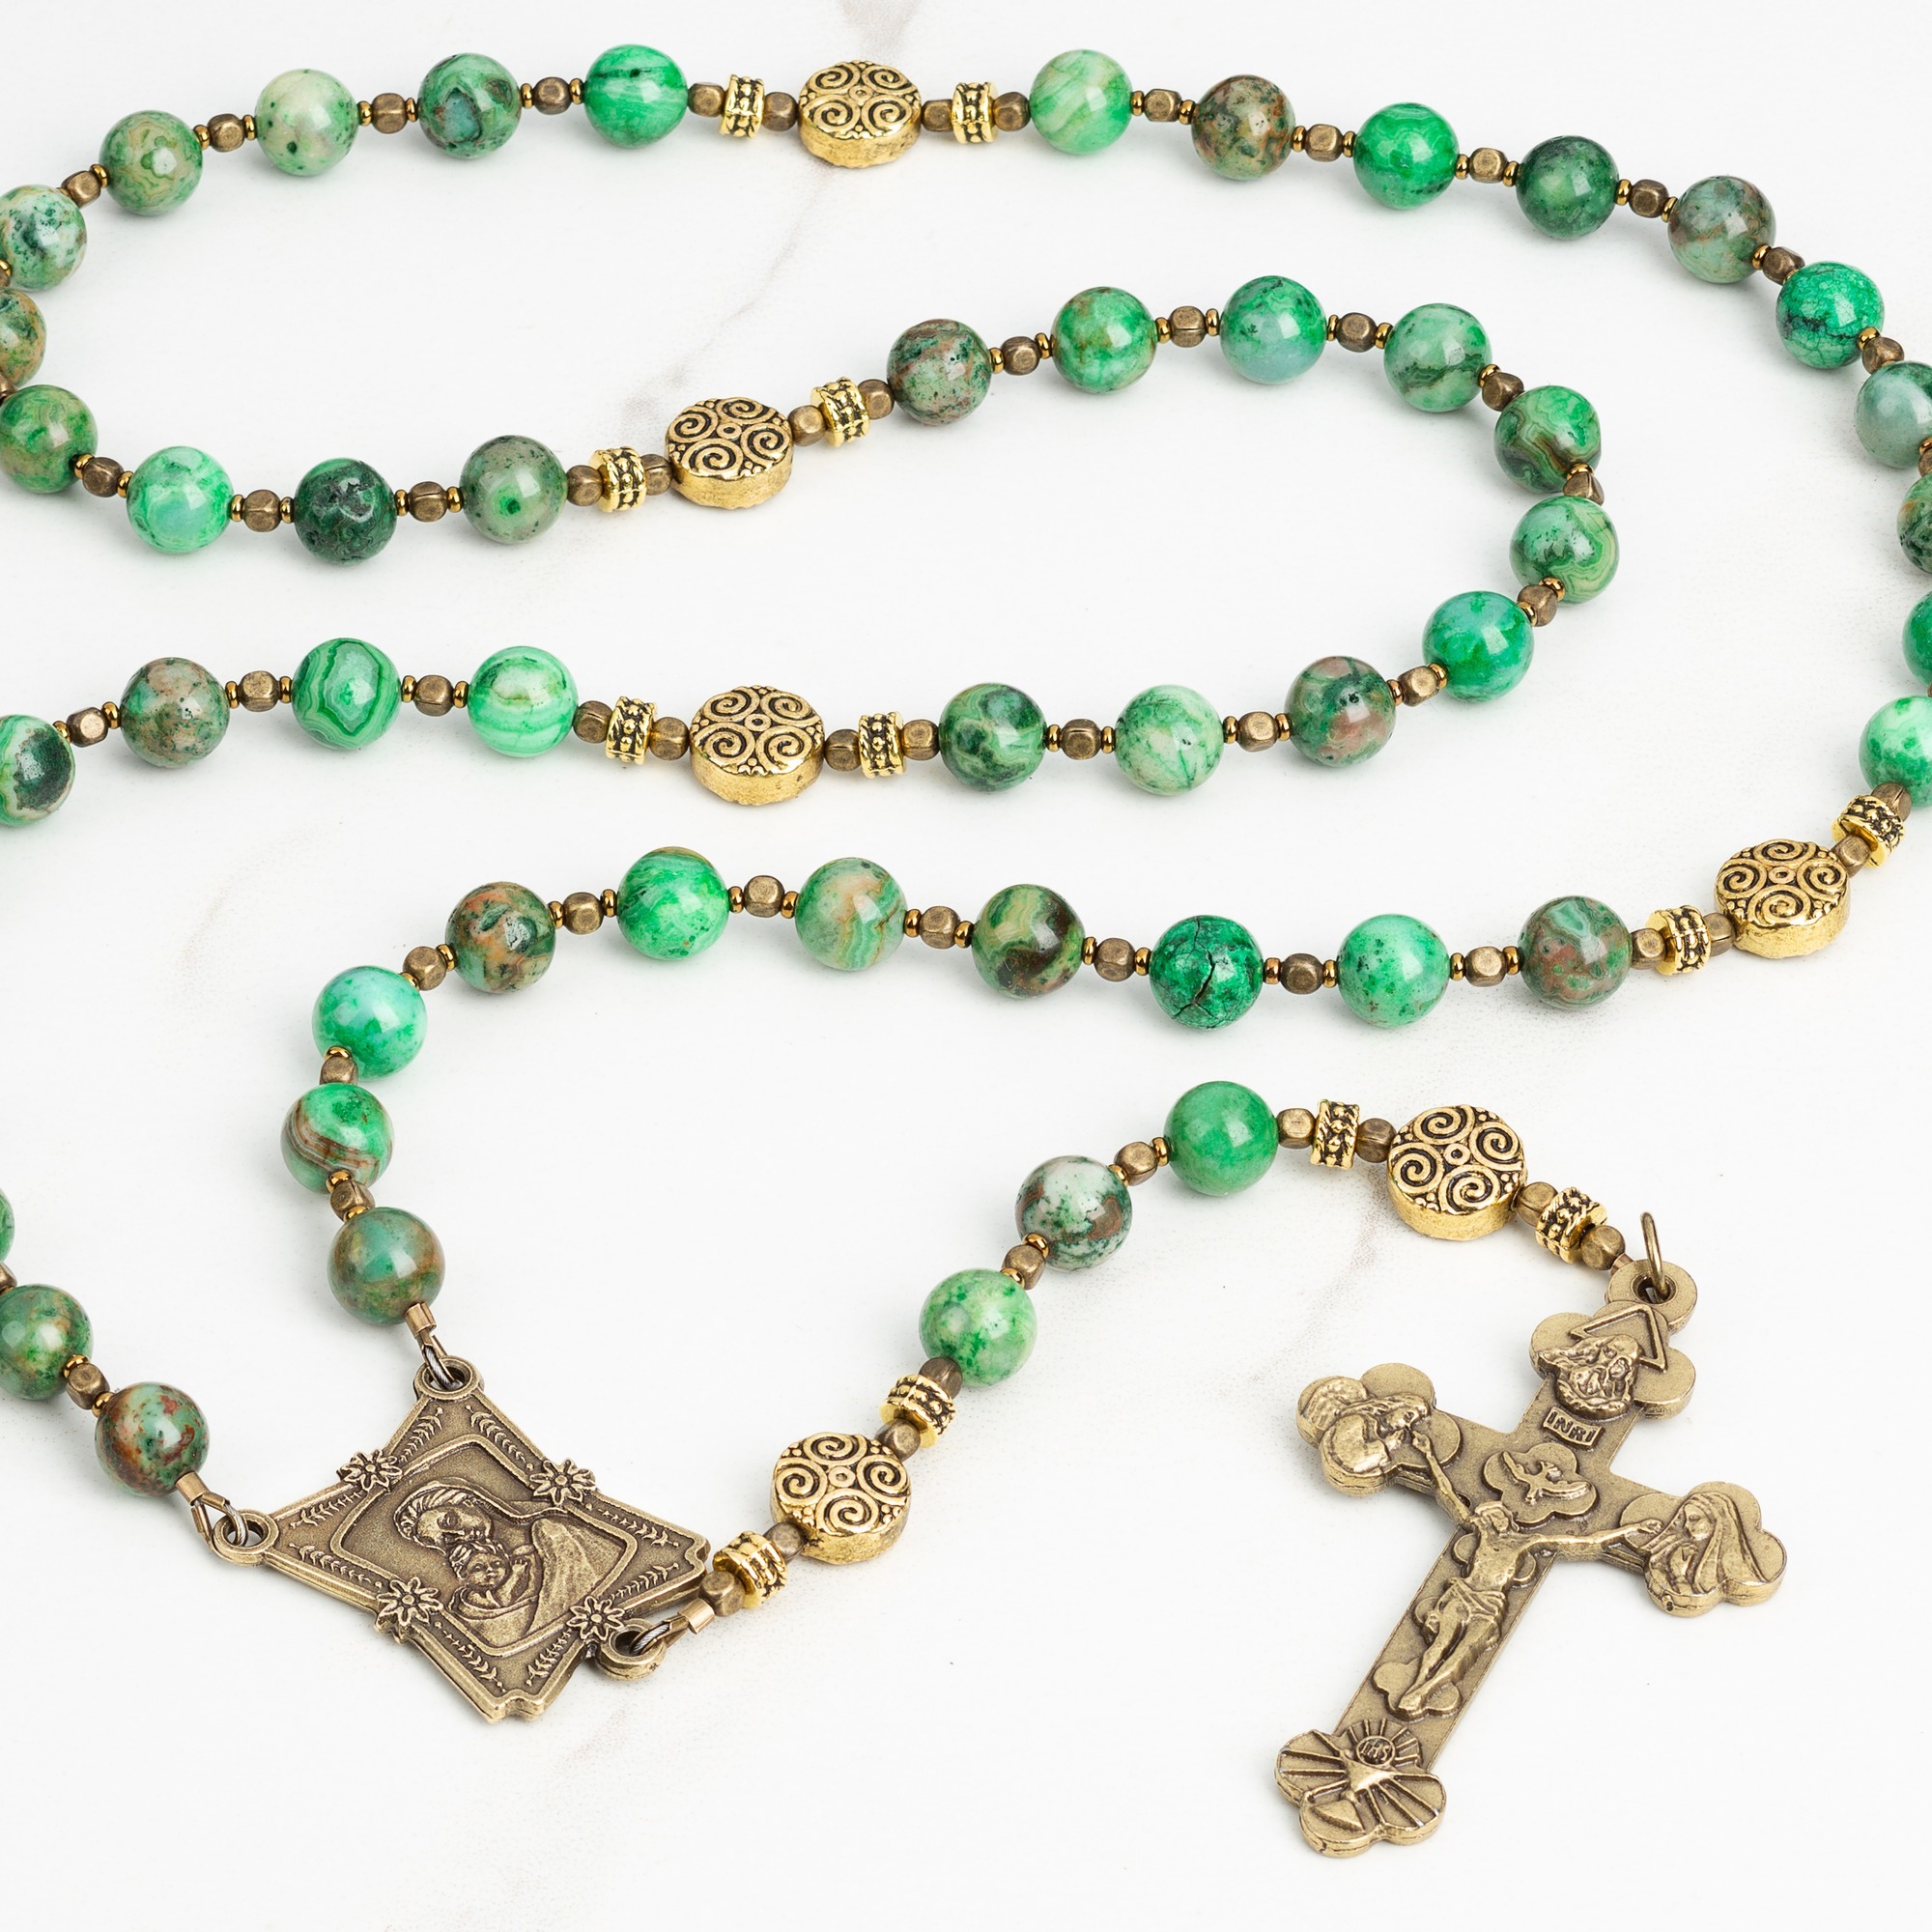 The Holy Mass Rosary | The Catholic Company®